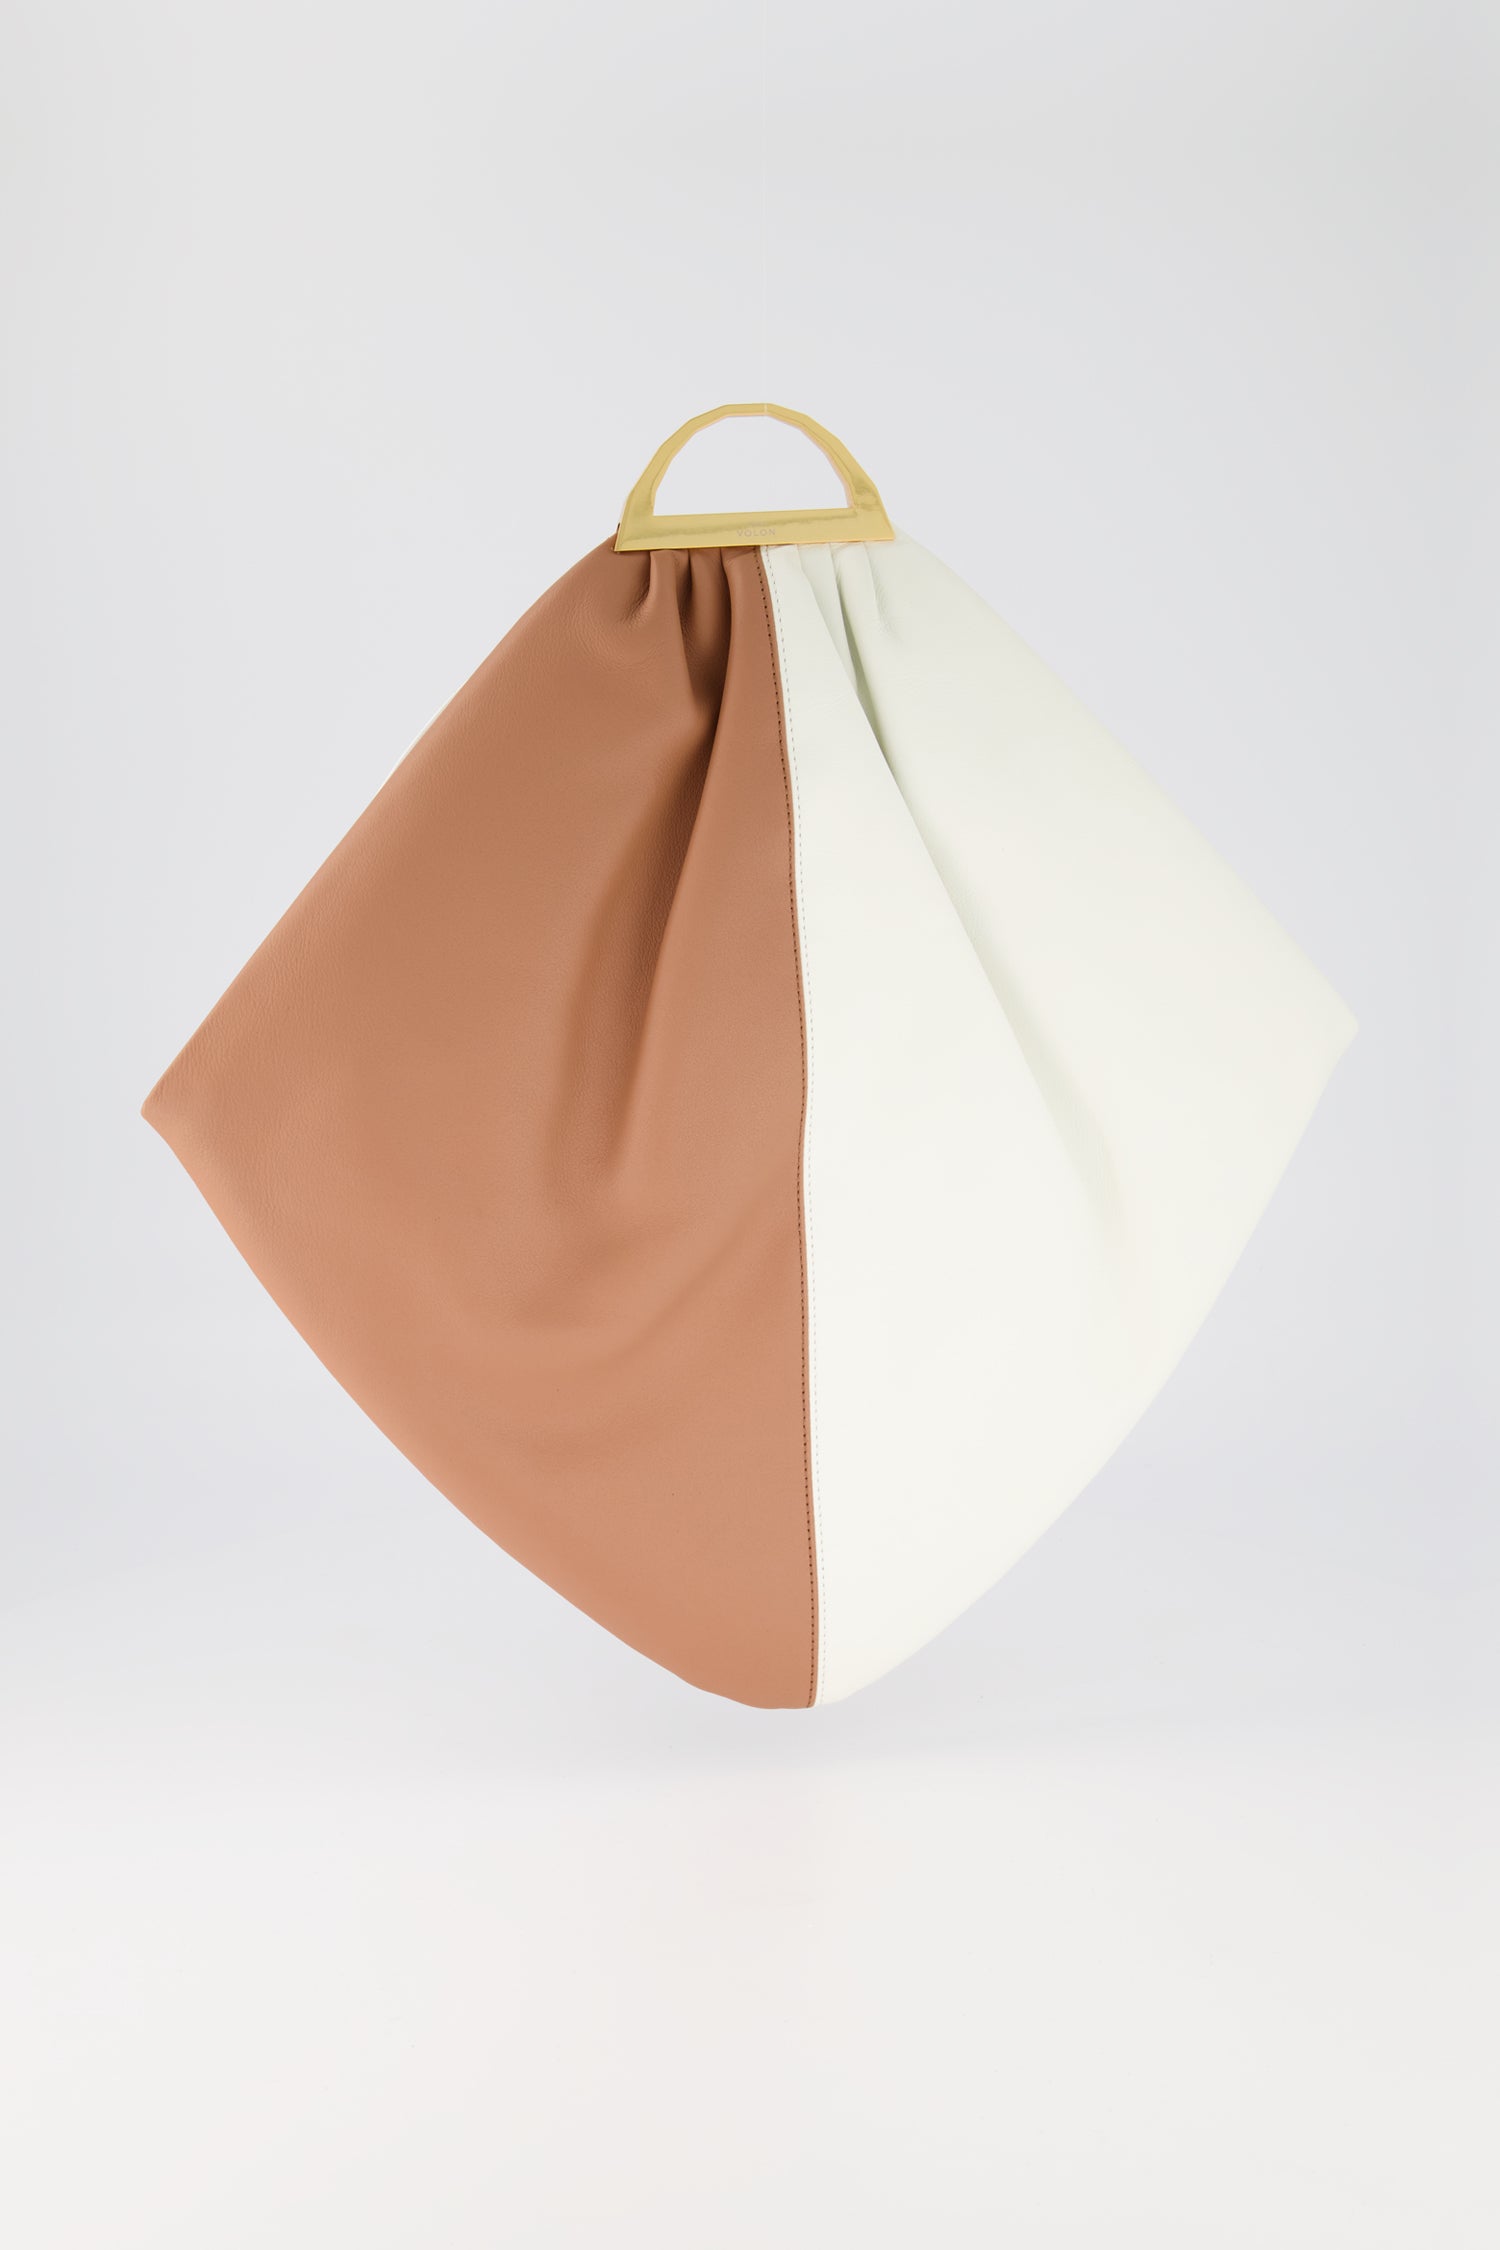 The Volon Tan/White Gao Handbag